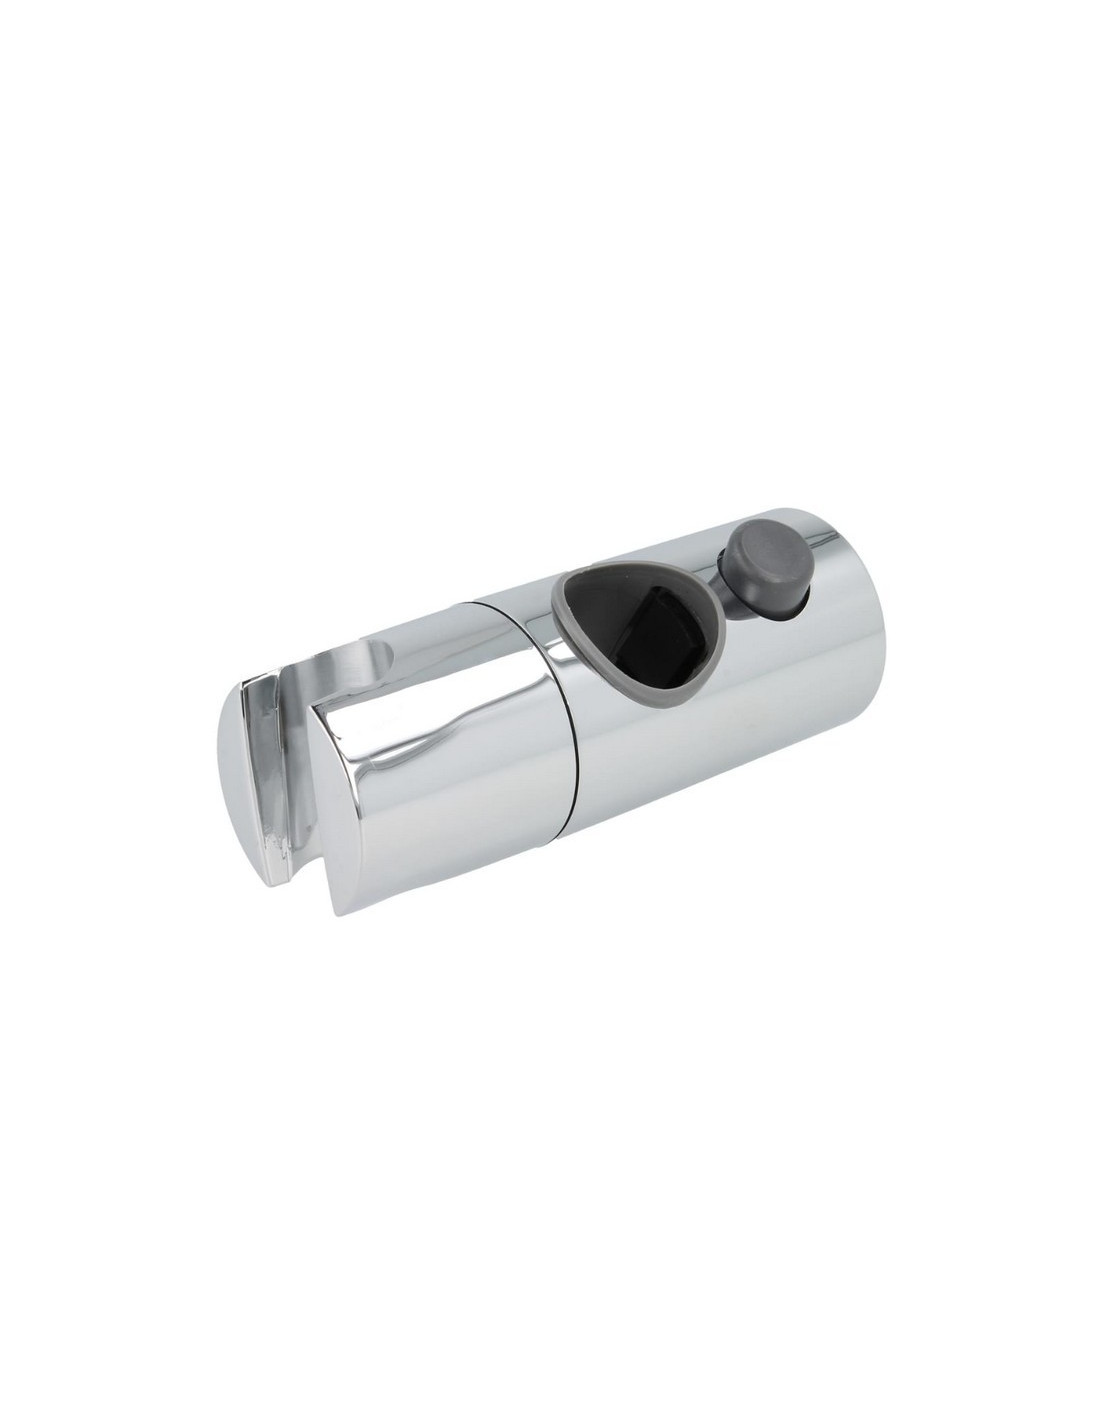 Curseur support douchette pour barre de douche ou colonne Ø 22 mm - ASW